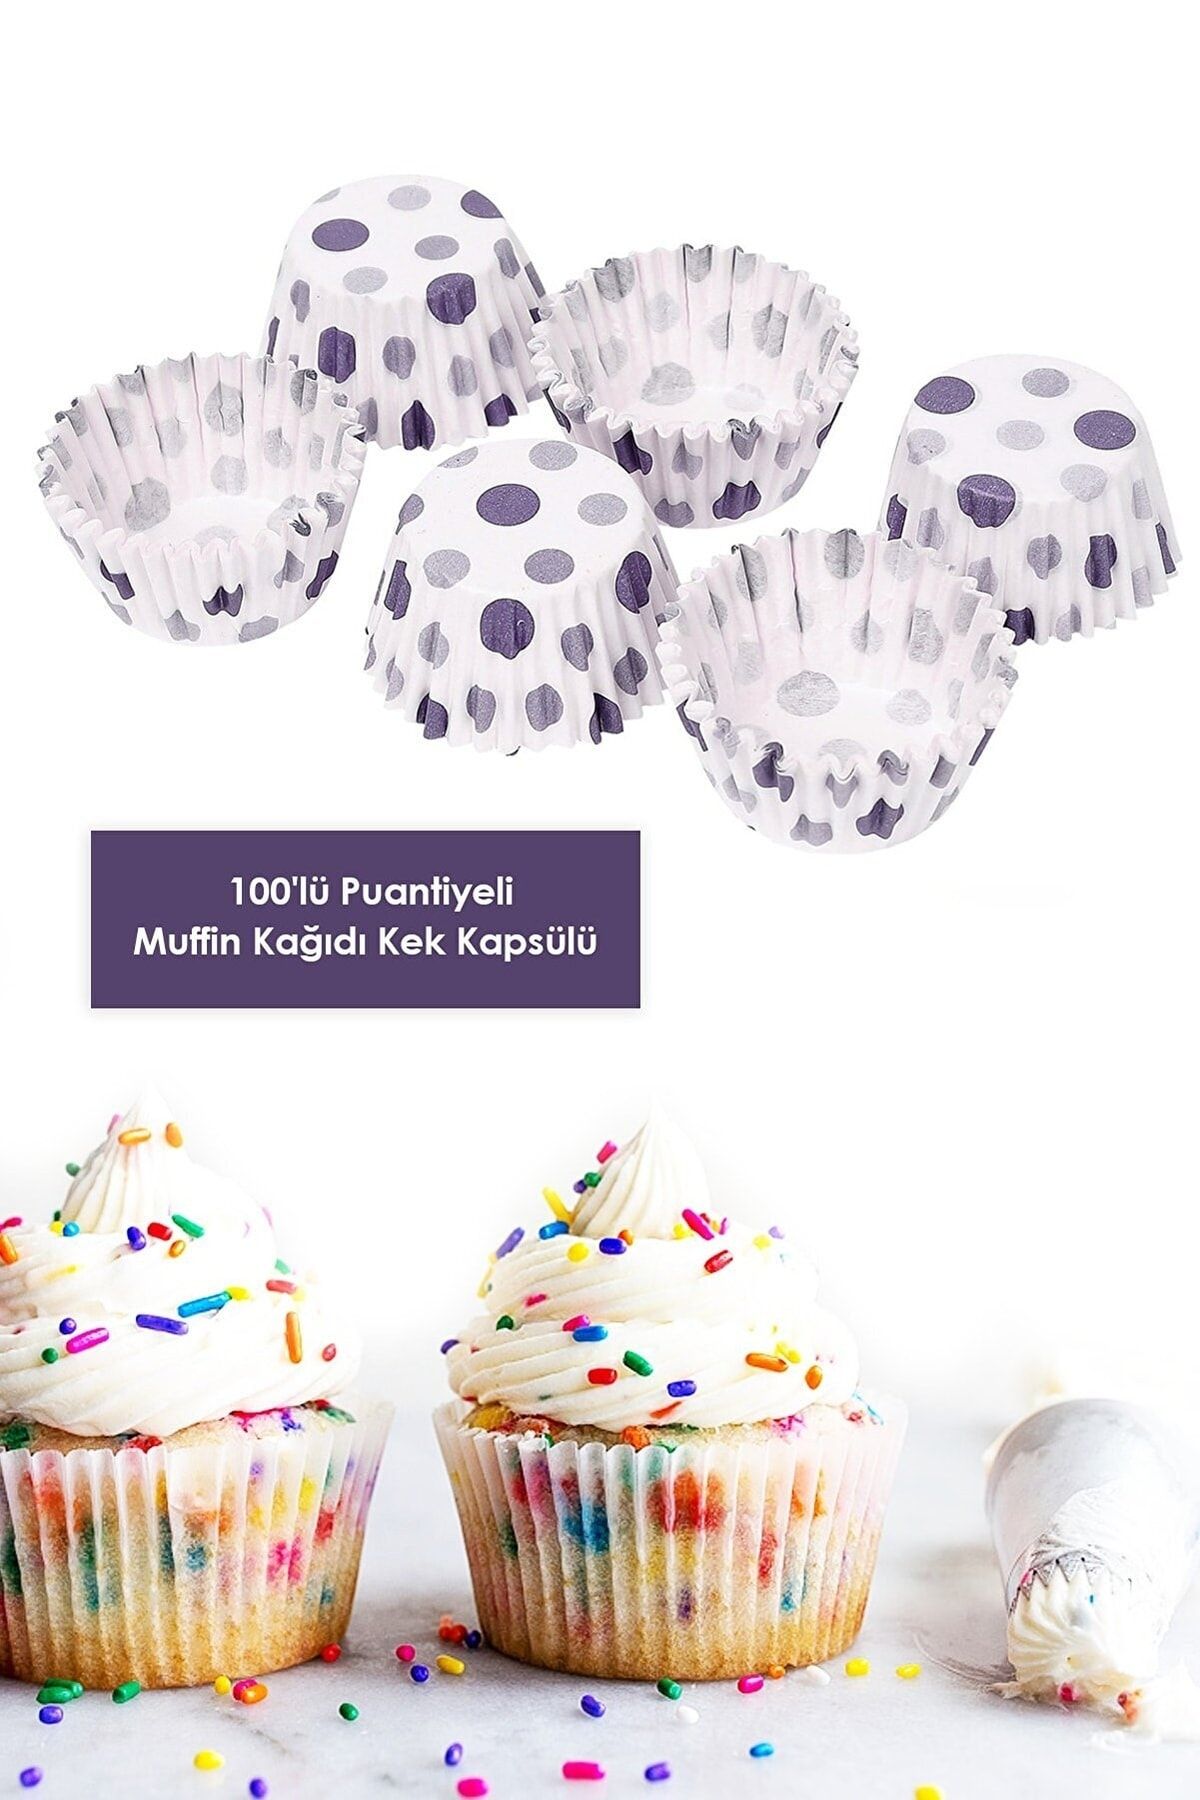 Bayev 100 Adet Puantiyeli Kağıt Kek Kapsülü Muffin Cupcake Kek Kapsülü